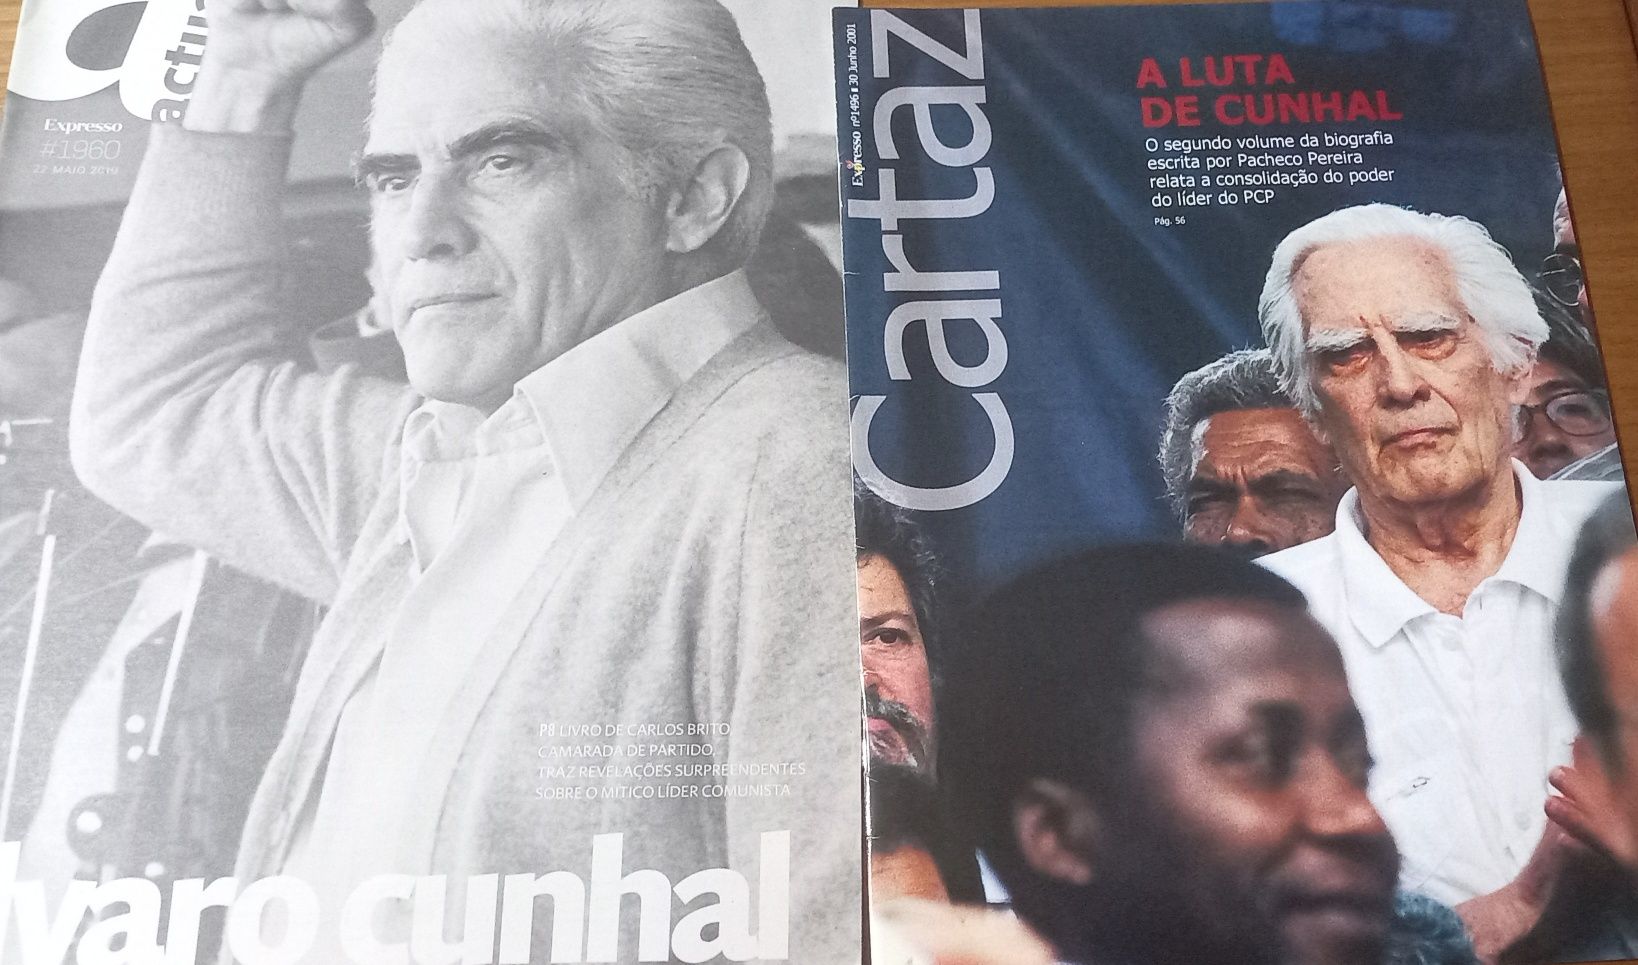 Álvaro Cunhal revistas e conteúdos 2001 e 2010